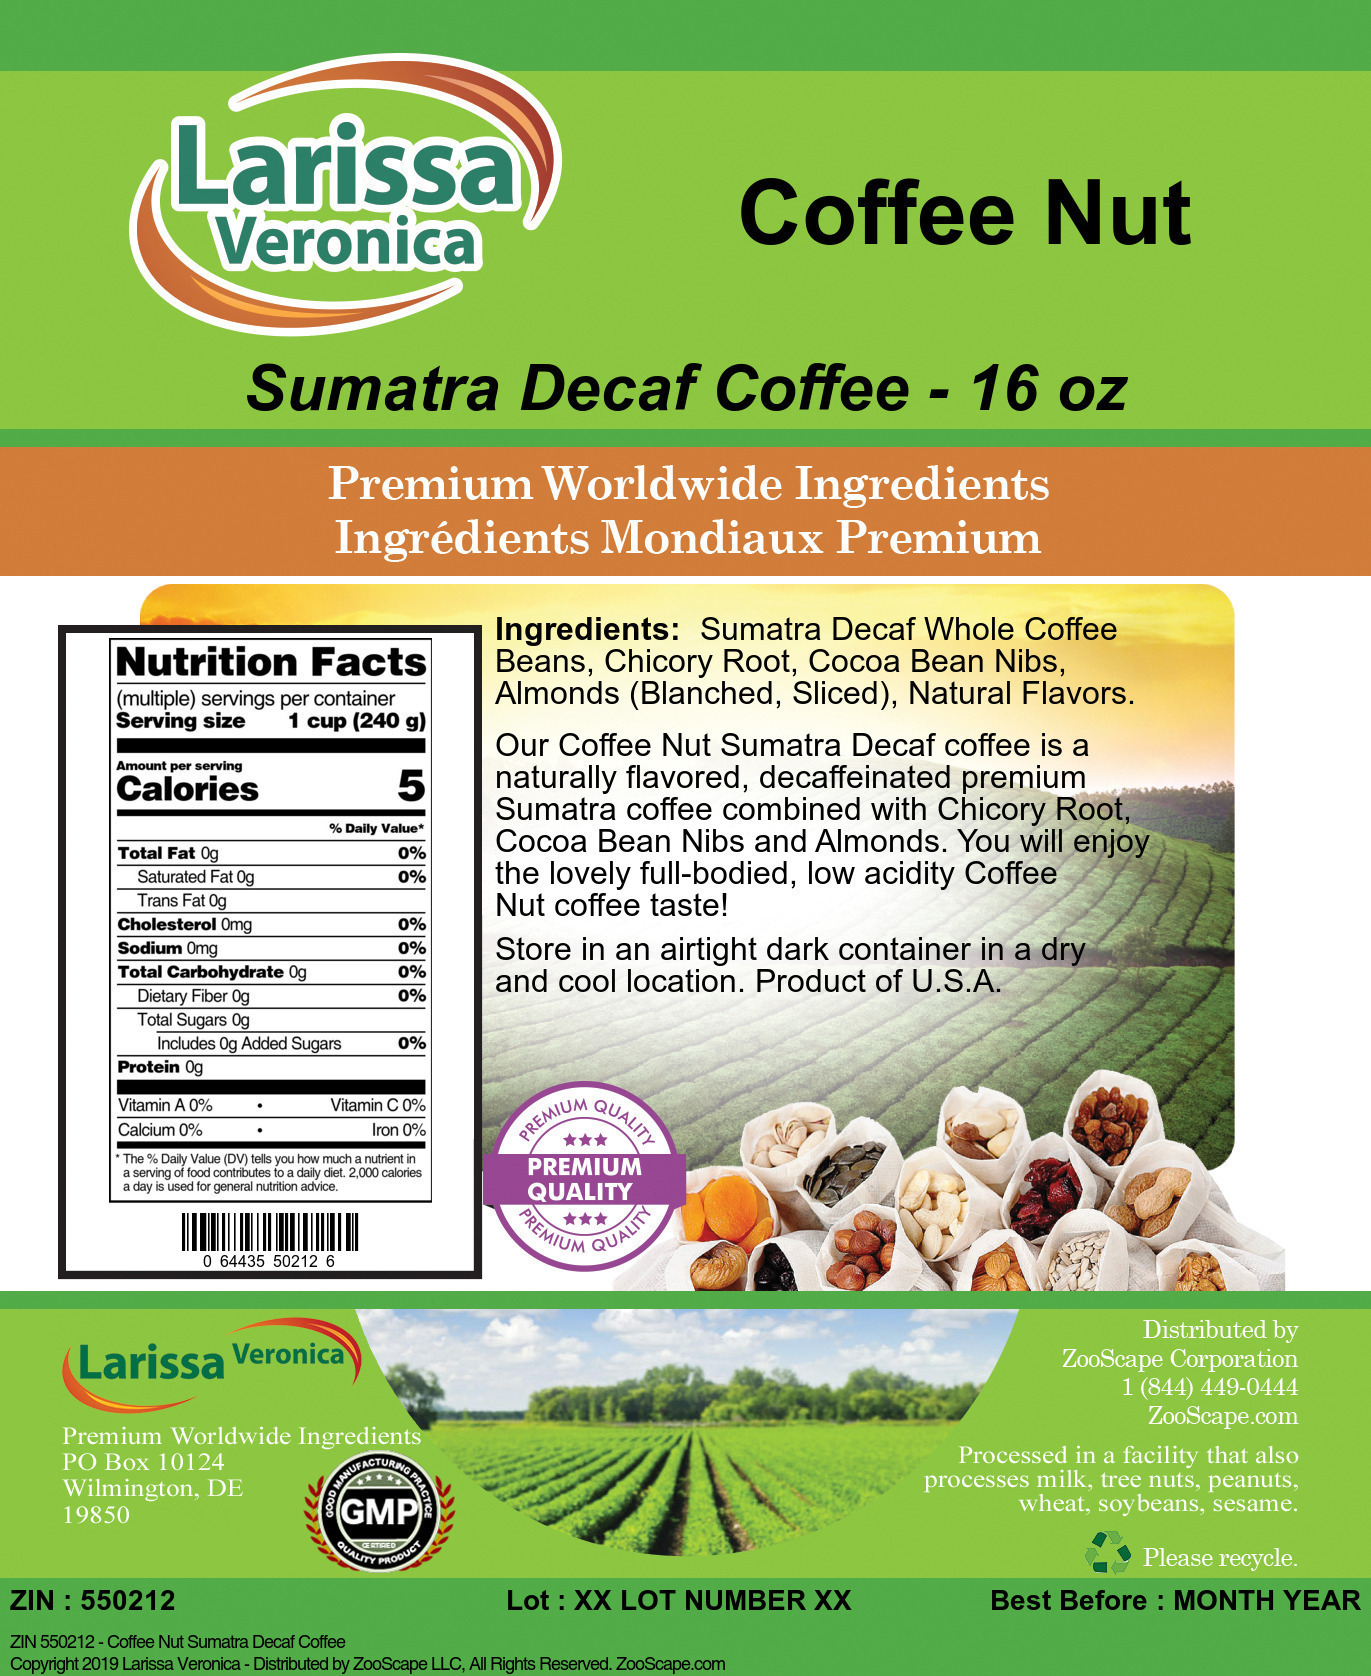 Coffee Nut Sumatra Decaf Coffee - Label